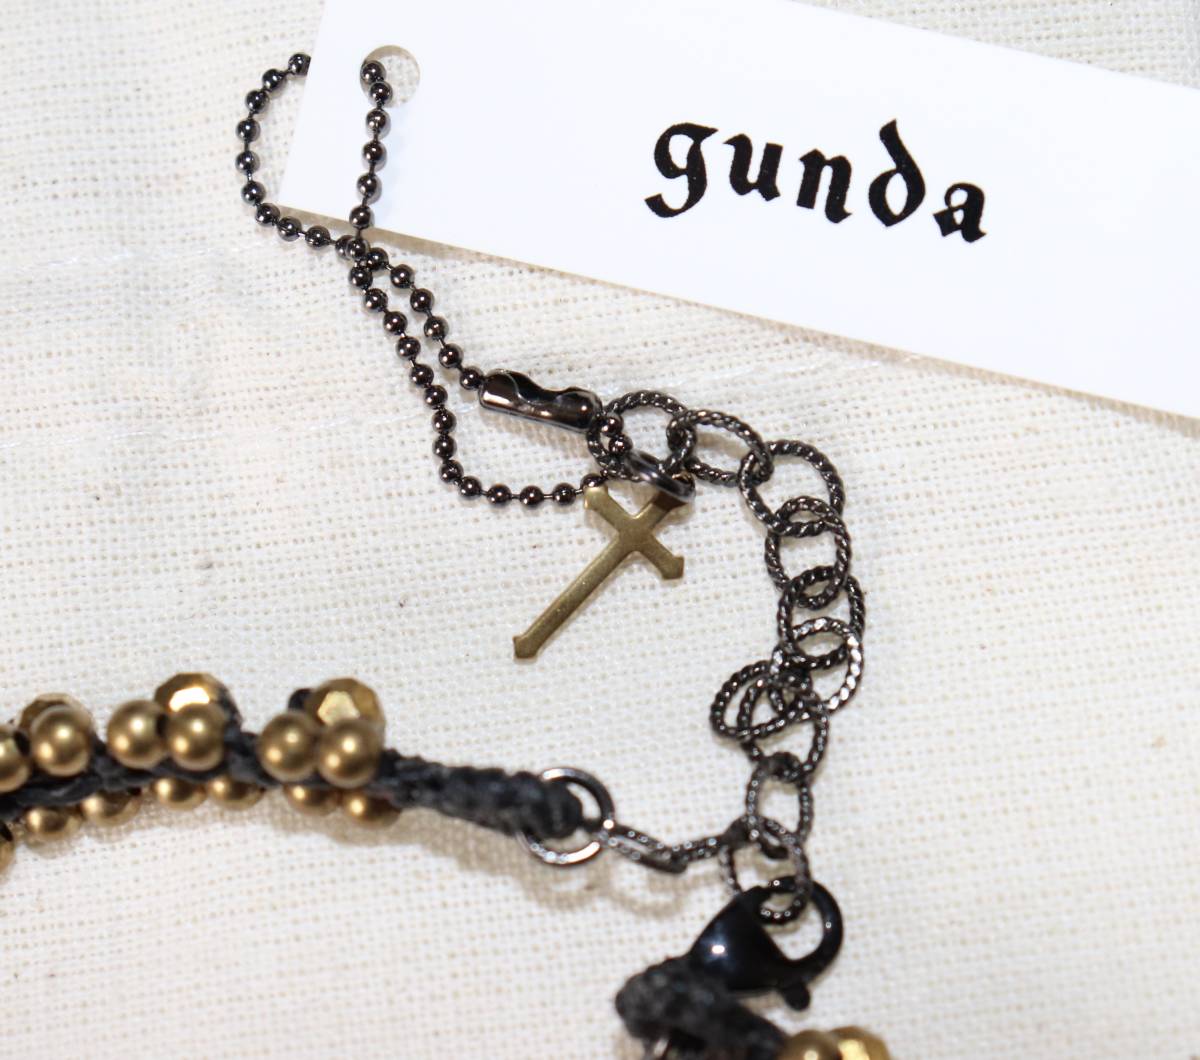  regular price 4600 new goods genuine article gunda gun daBUBBLE 11 ANK anklet 1001